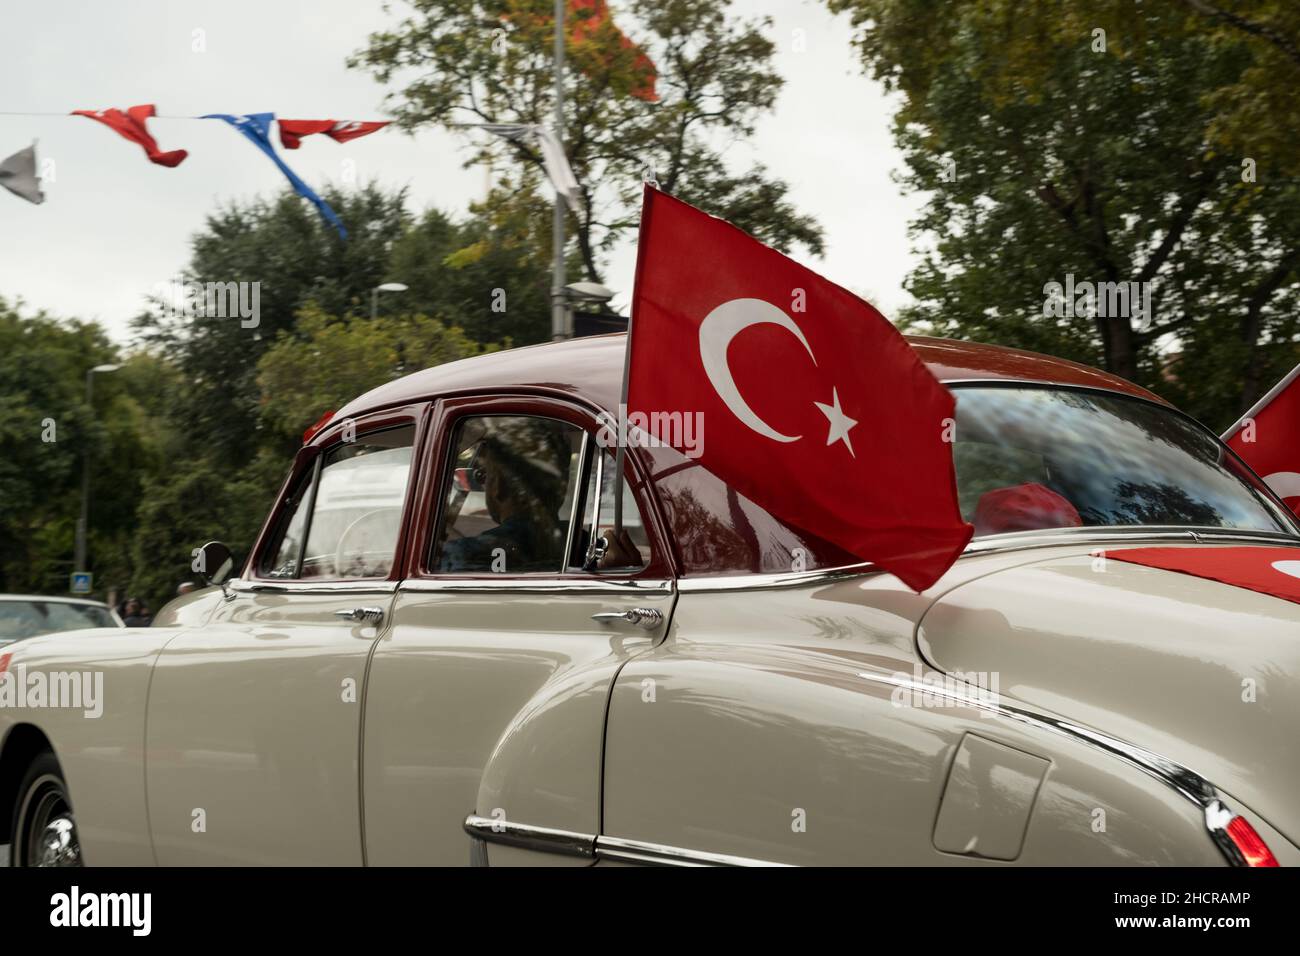 Istanbul, Turquie - 29 octobre 2021 : une femme portant le drapeau turc à la fenêtre de l'ancienne voiture pour le 29 octobre jour de la république.Photo éditoriale à Istanbul Turquie. Banque D'Images